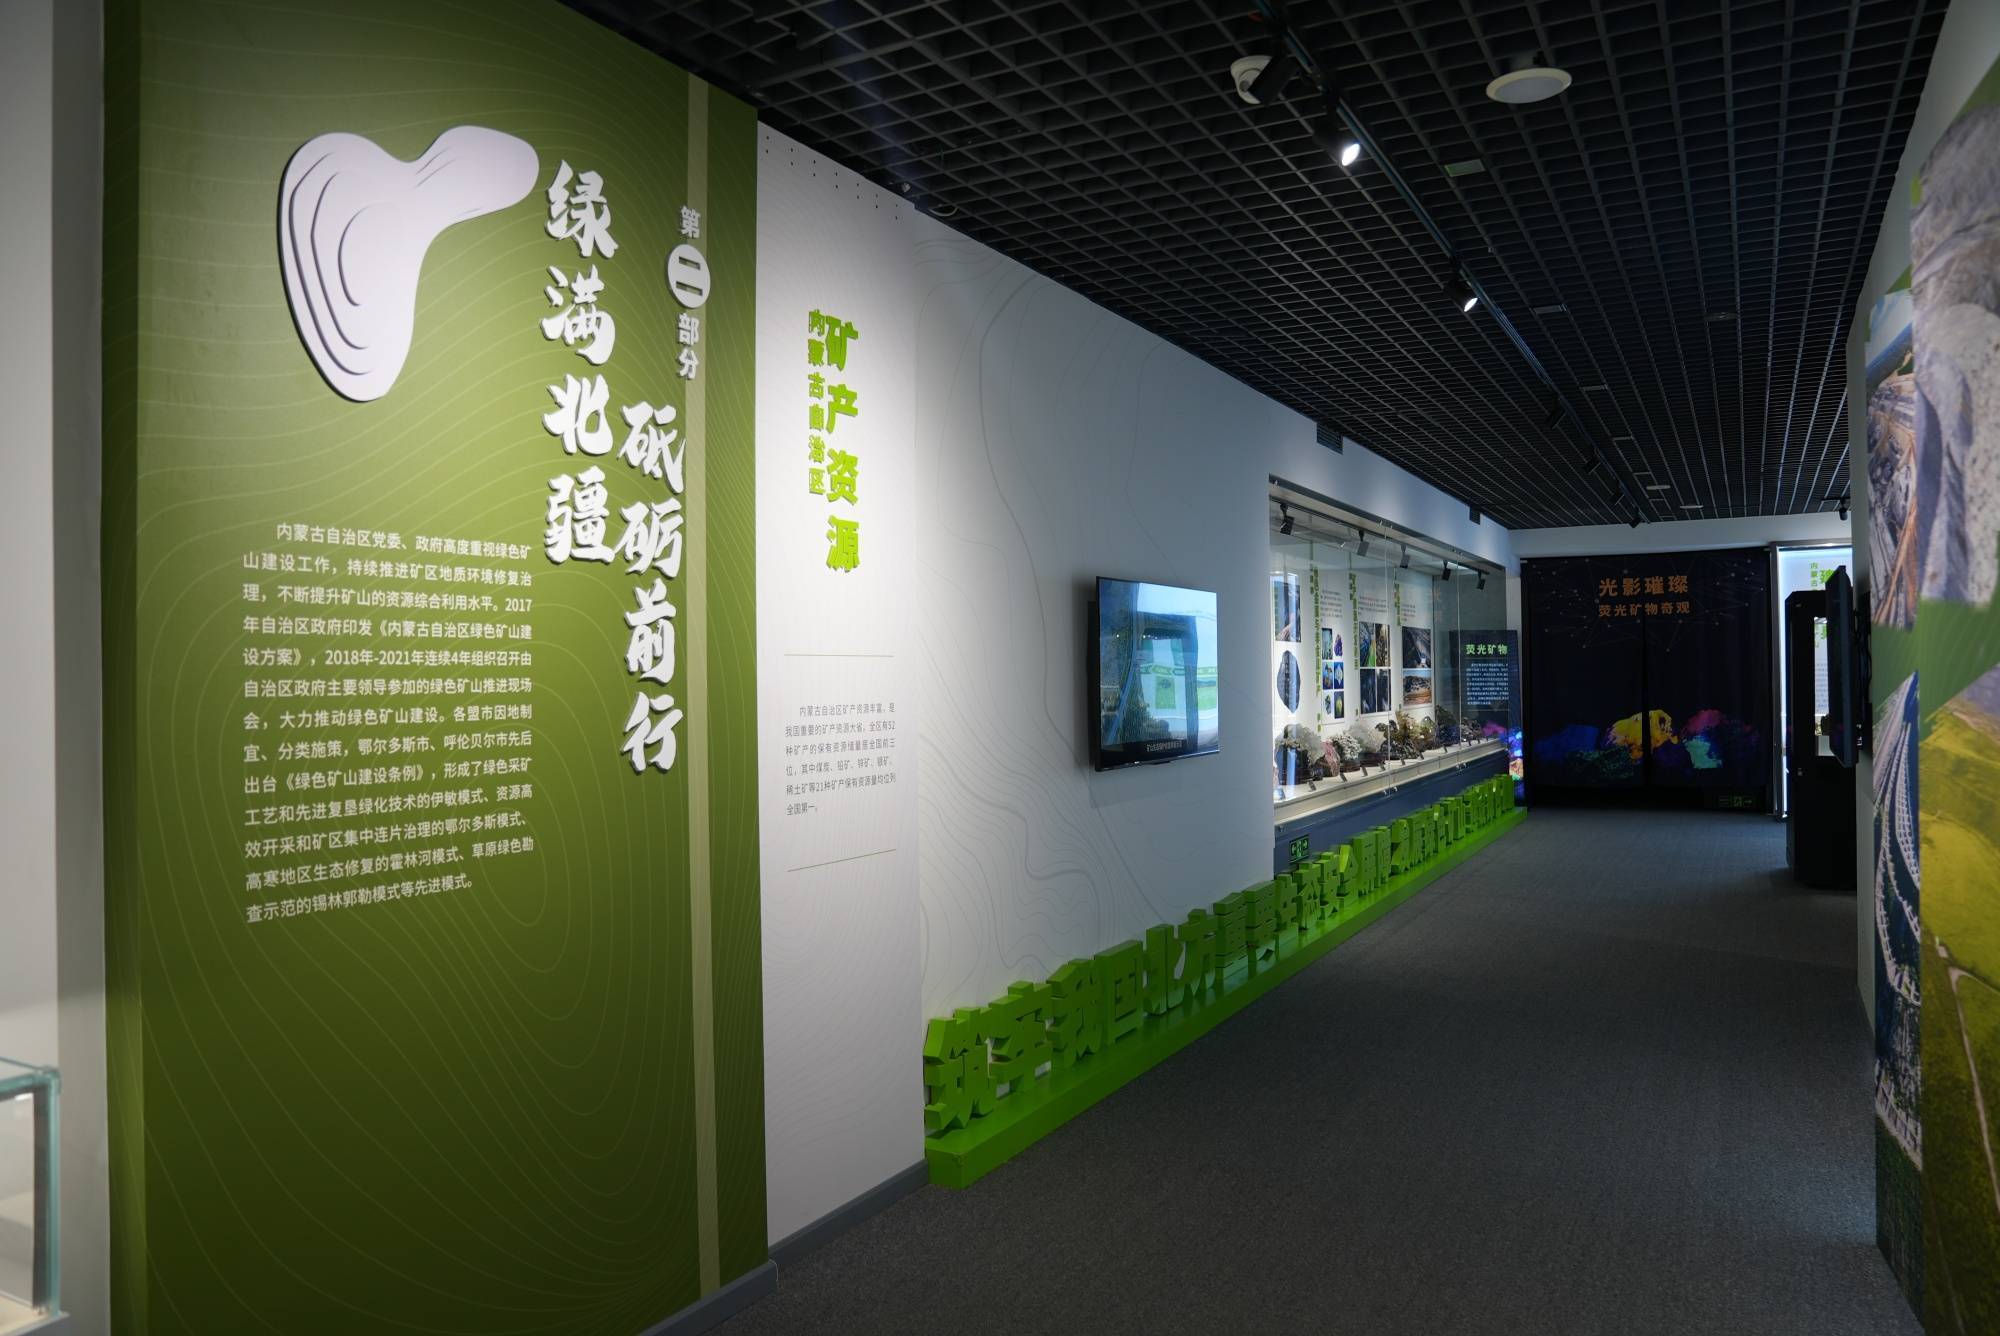 《亮丽北疆逐绿而行—内蒙古绿色矿山特展》在北京展出